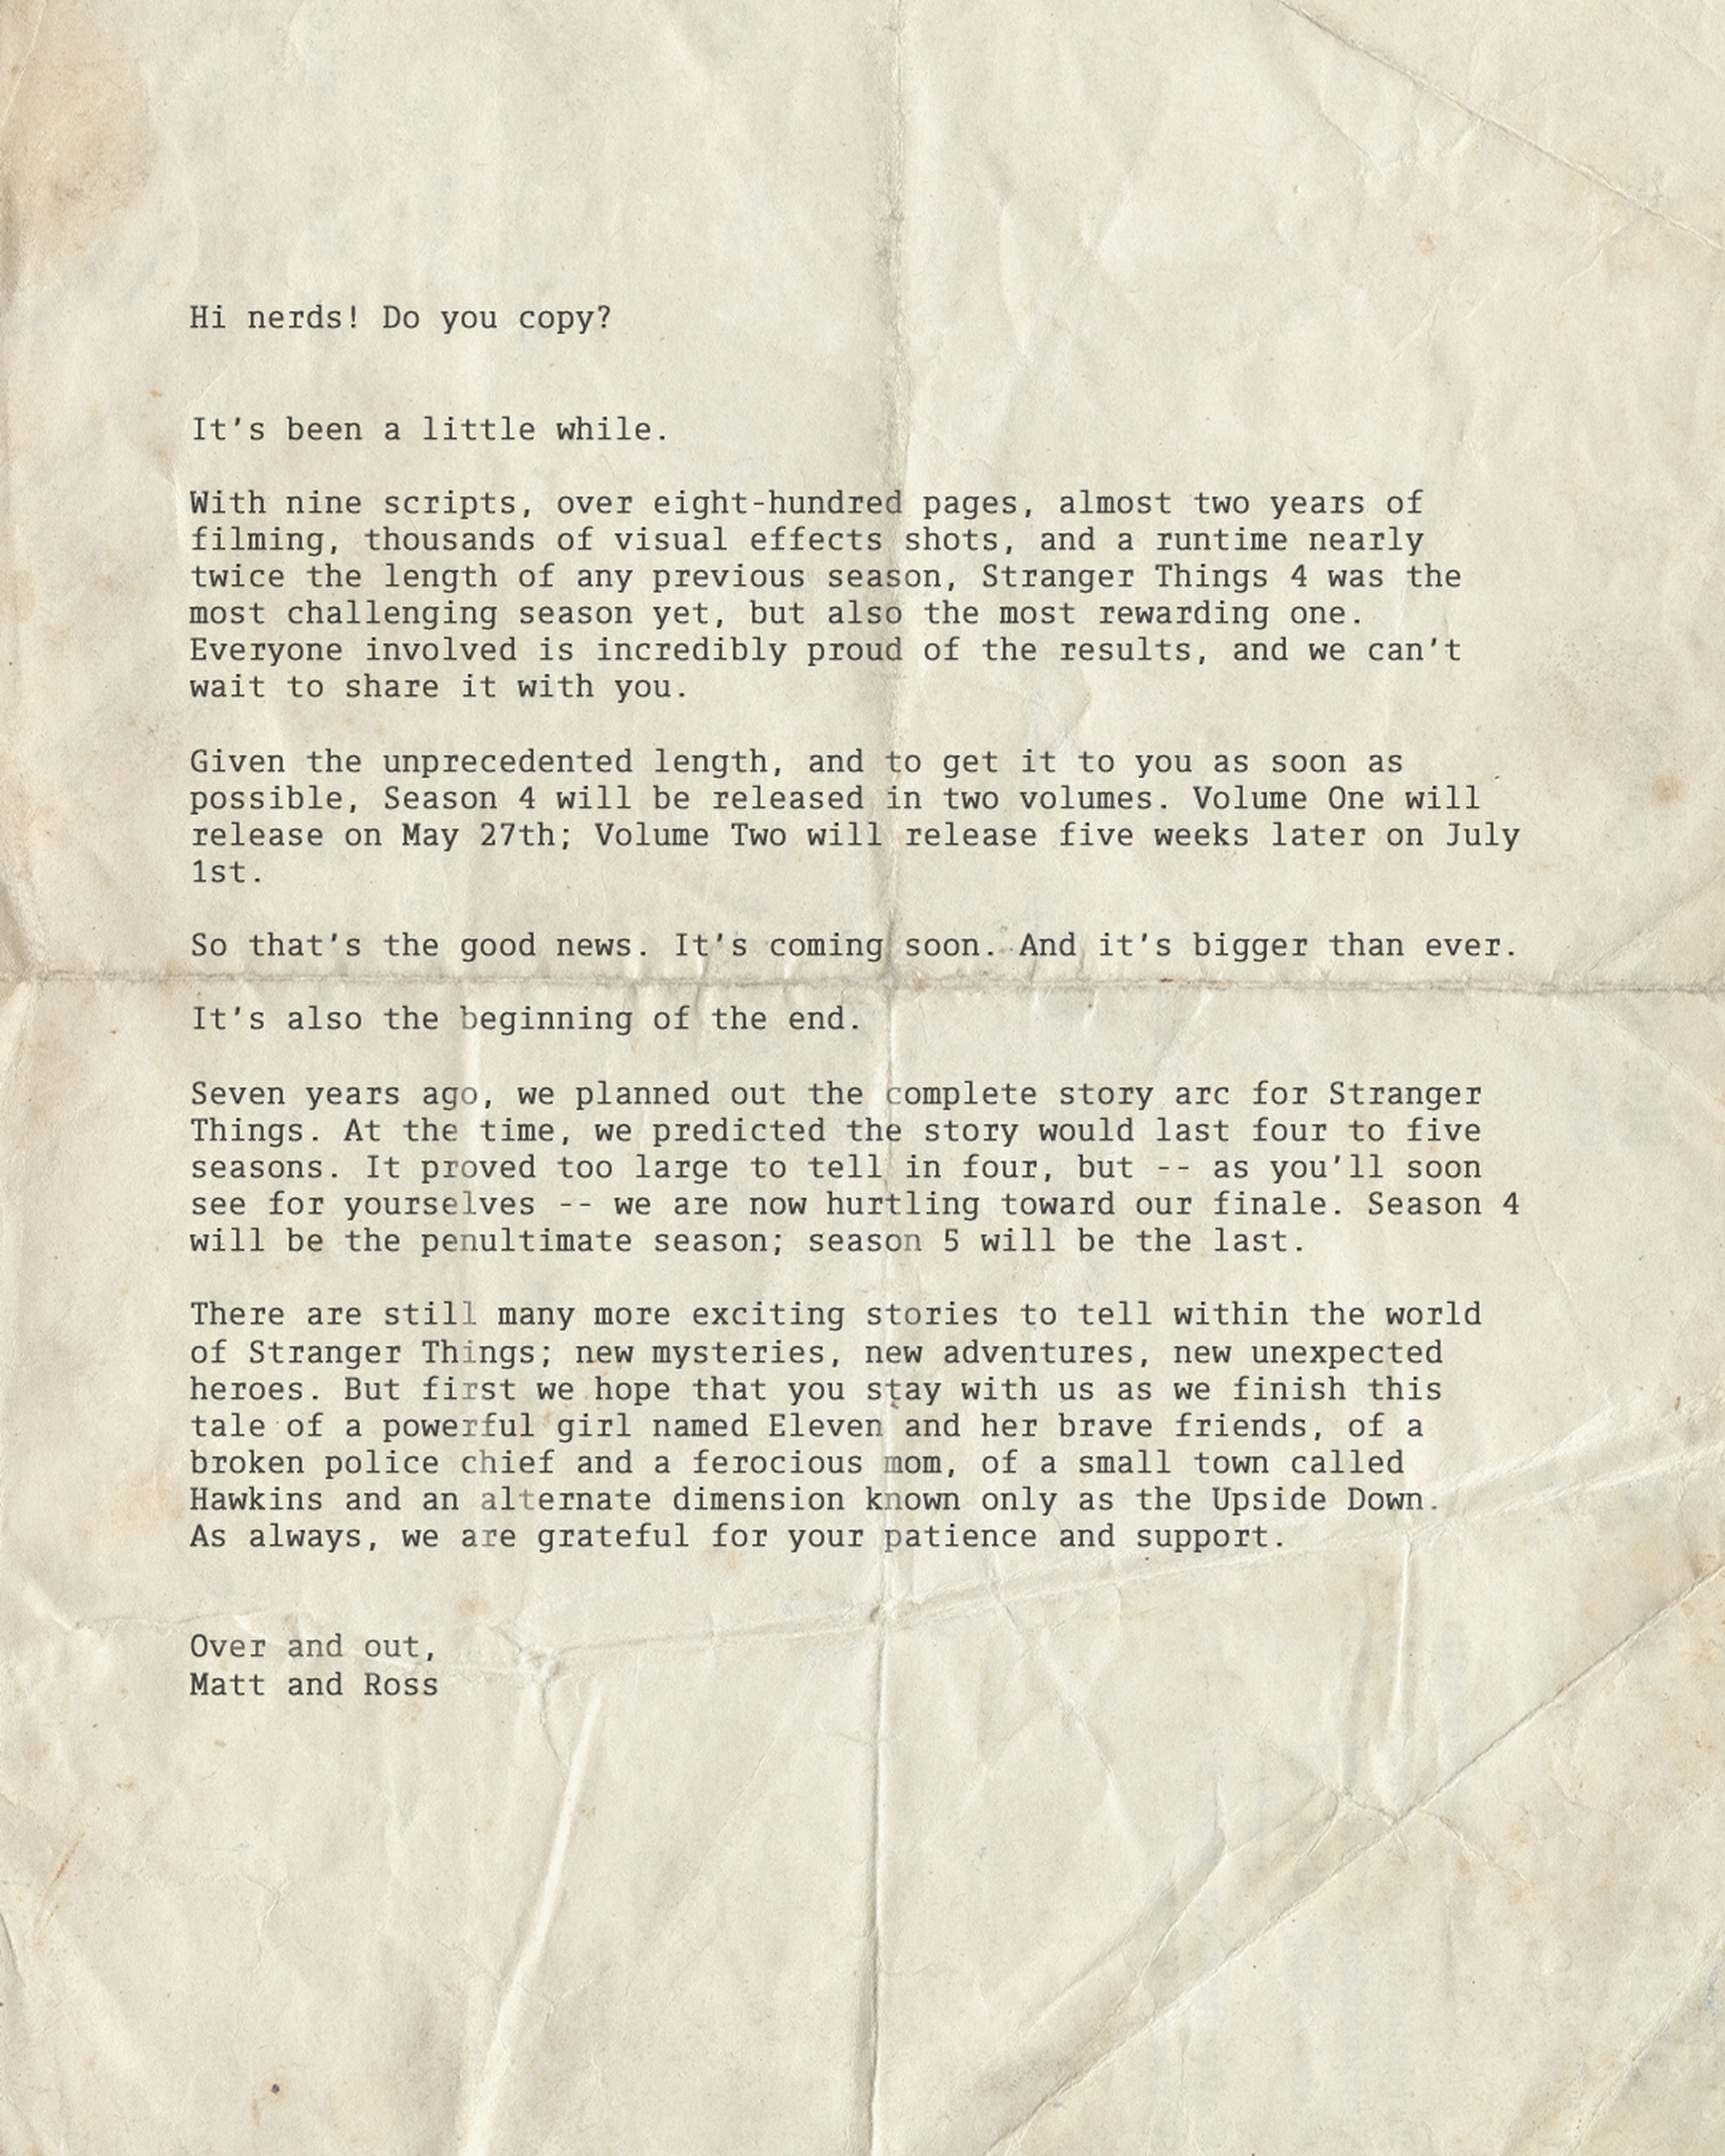 Comunicado oficial de los Hermanos Duffer sobre el final de Stranger Things